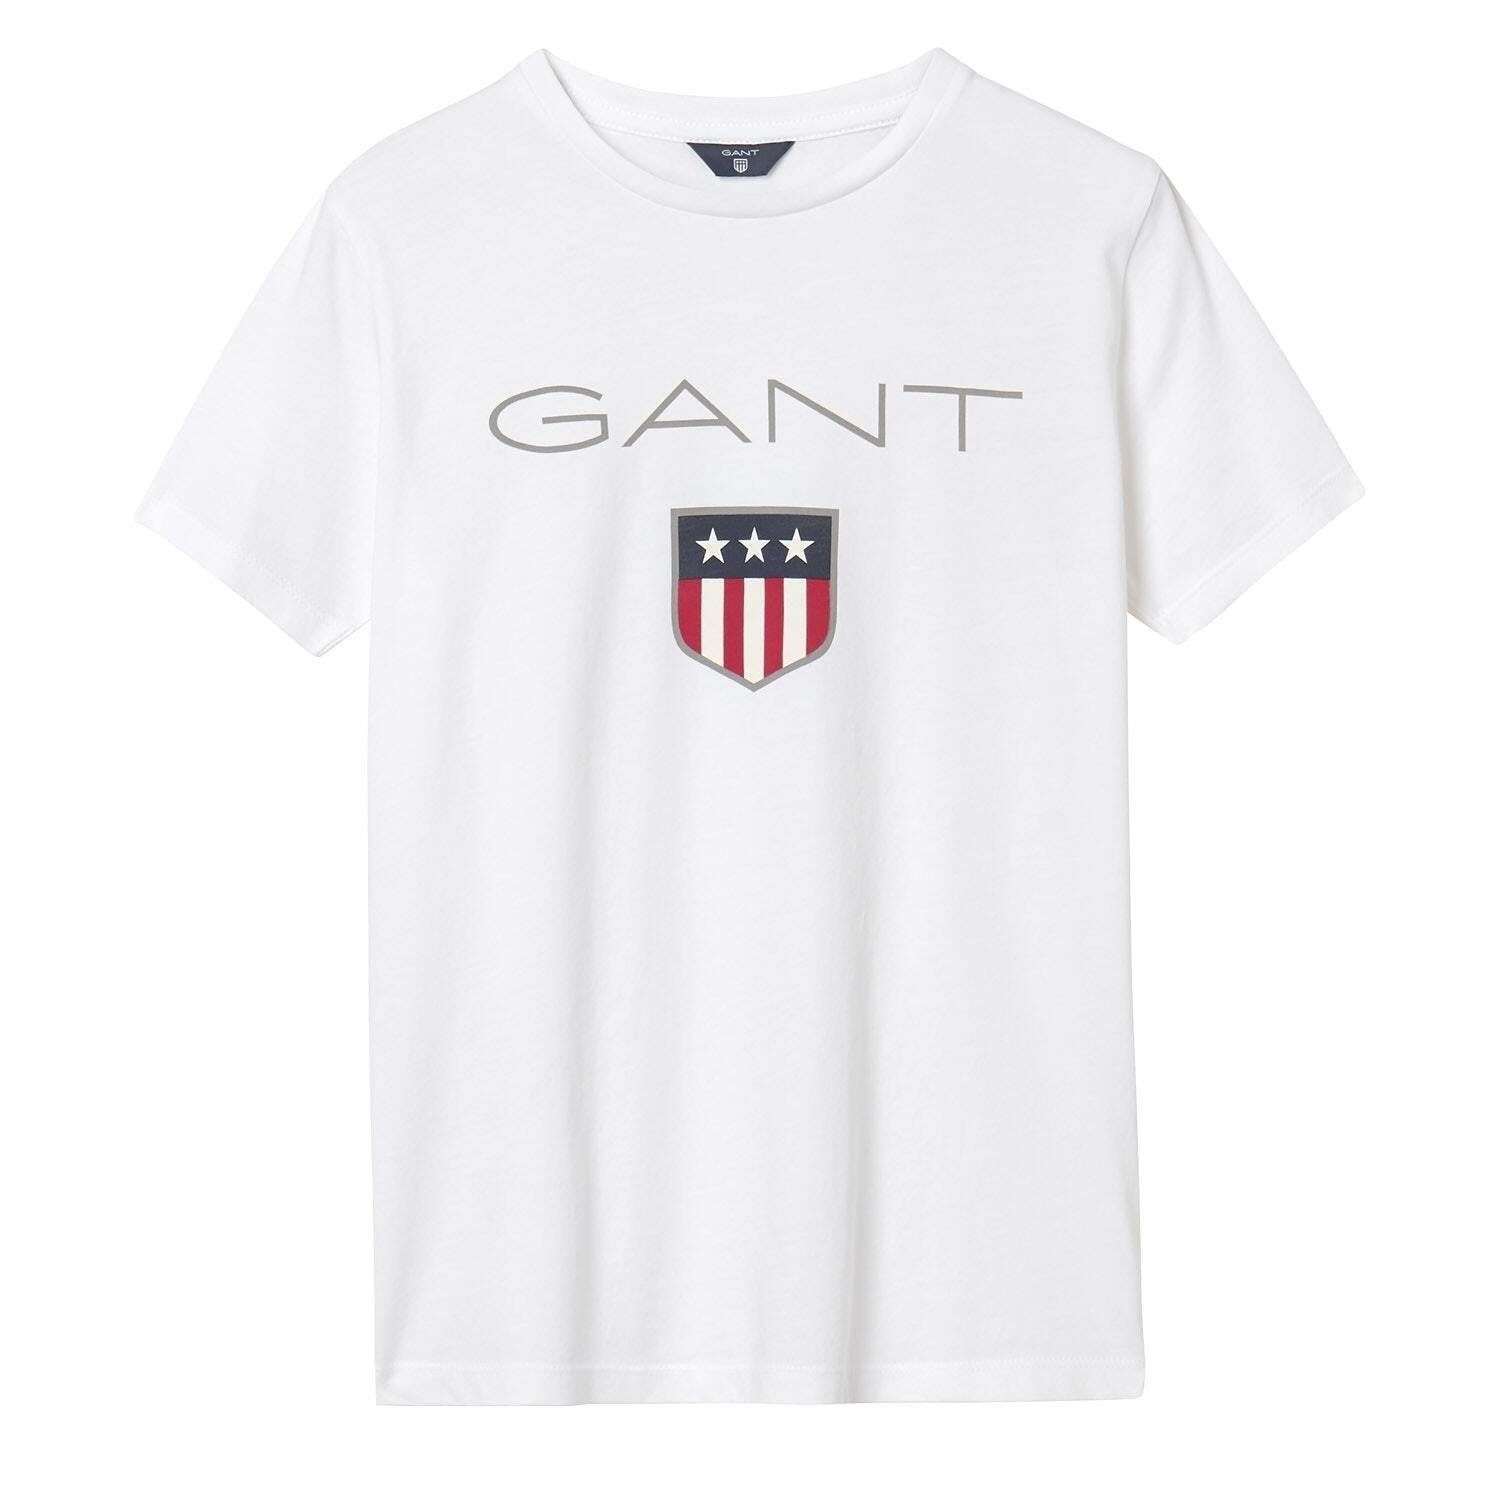 Gant T-Shirt Jungen T-Shirt - Teen Boys SHIELD Logo, Kurzarm Weiß